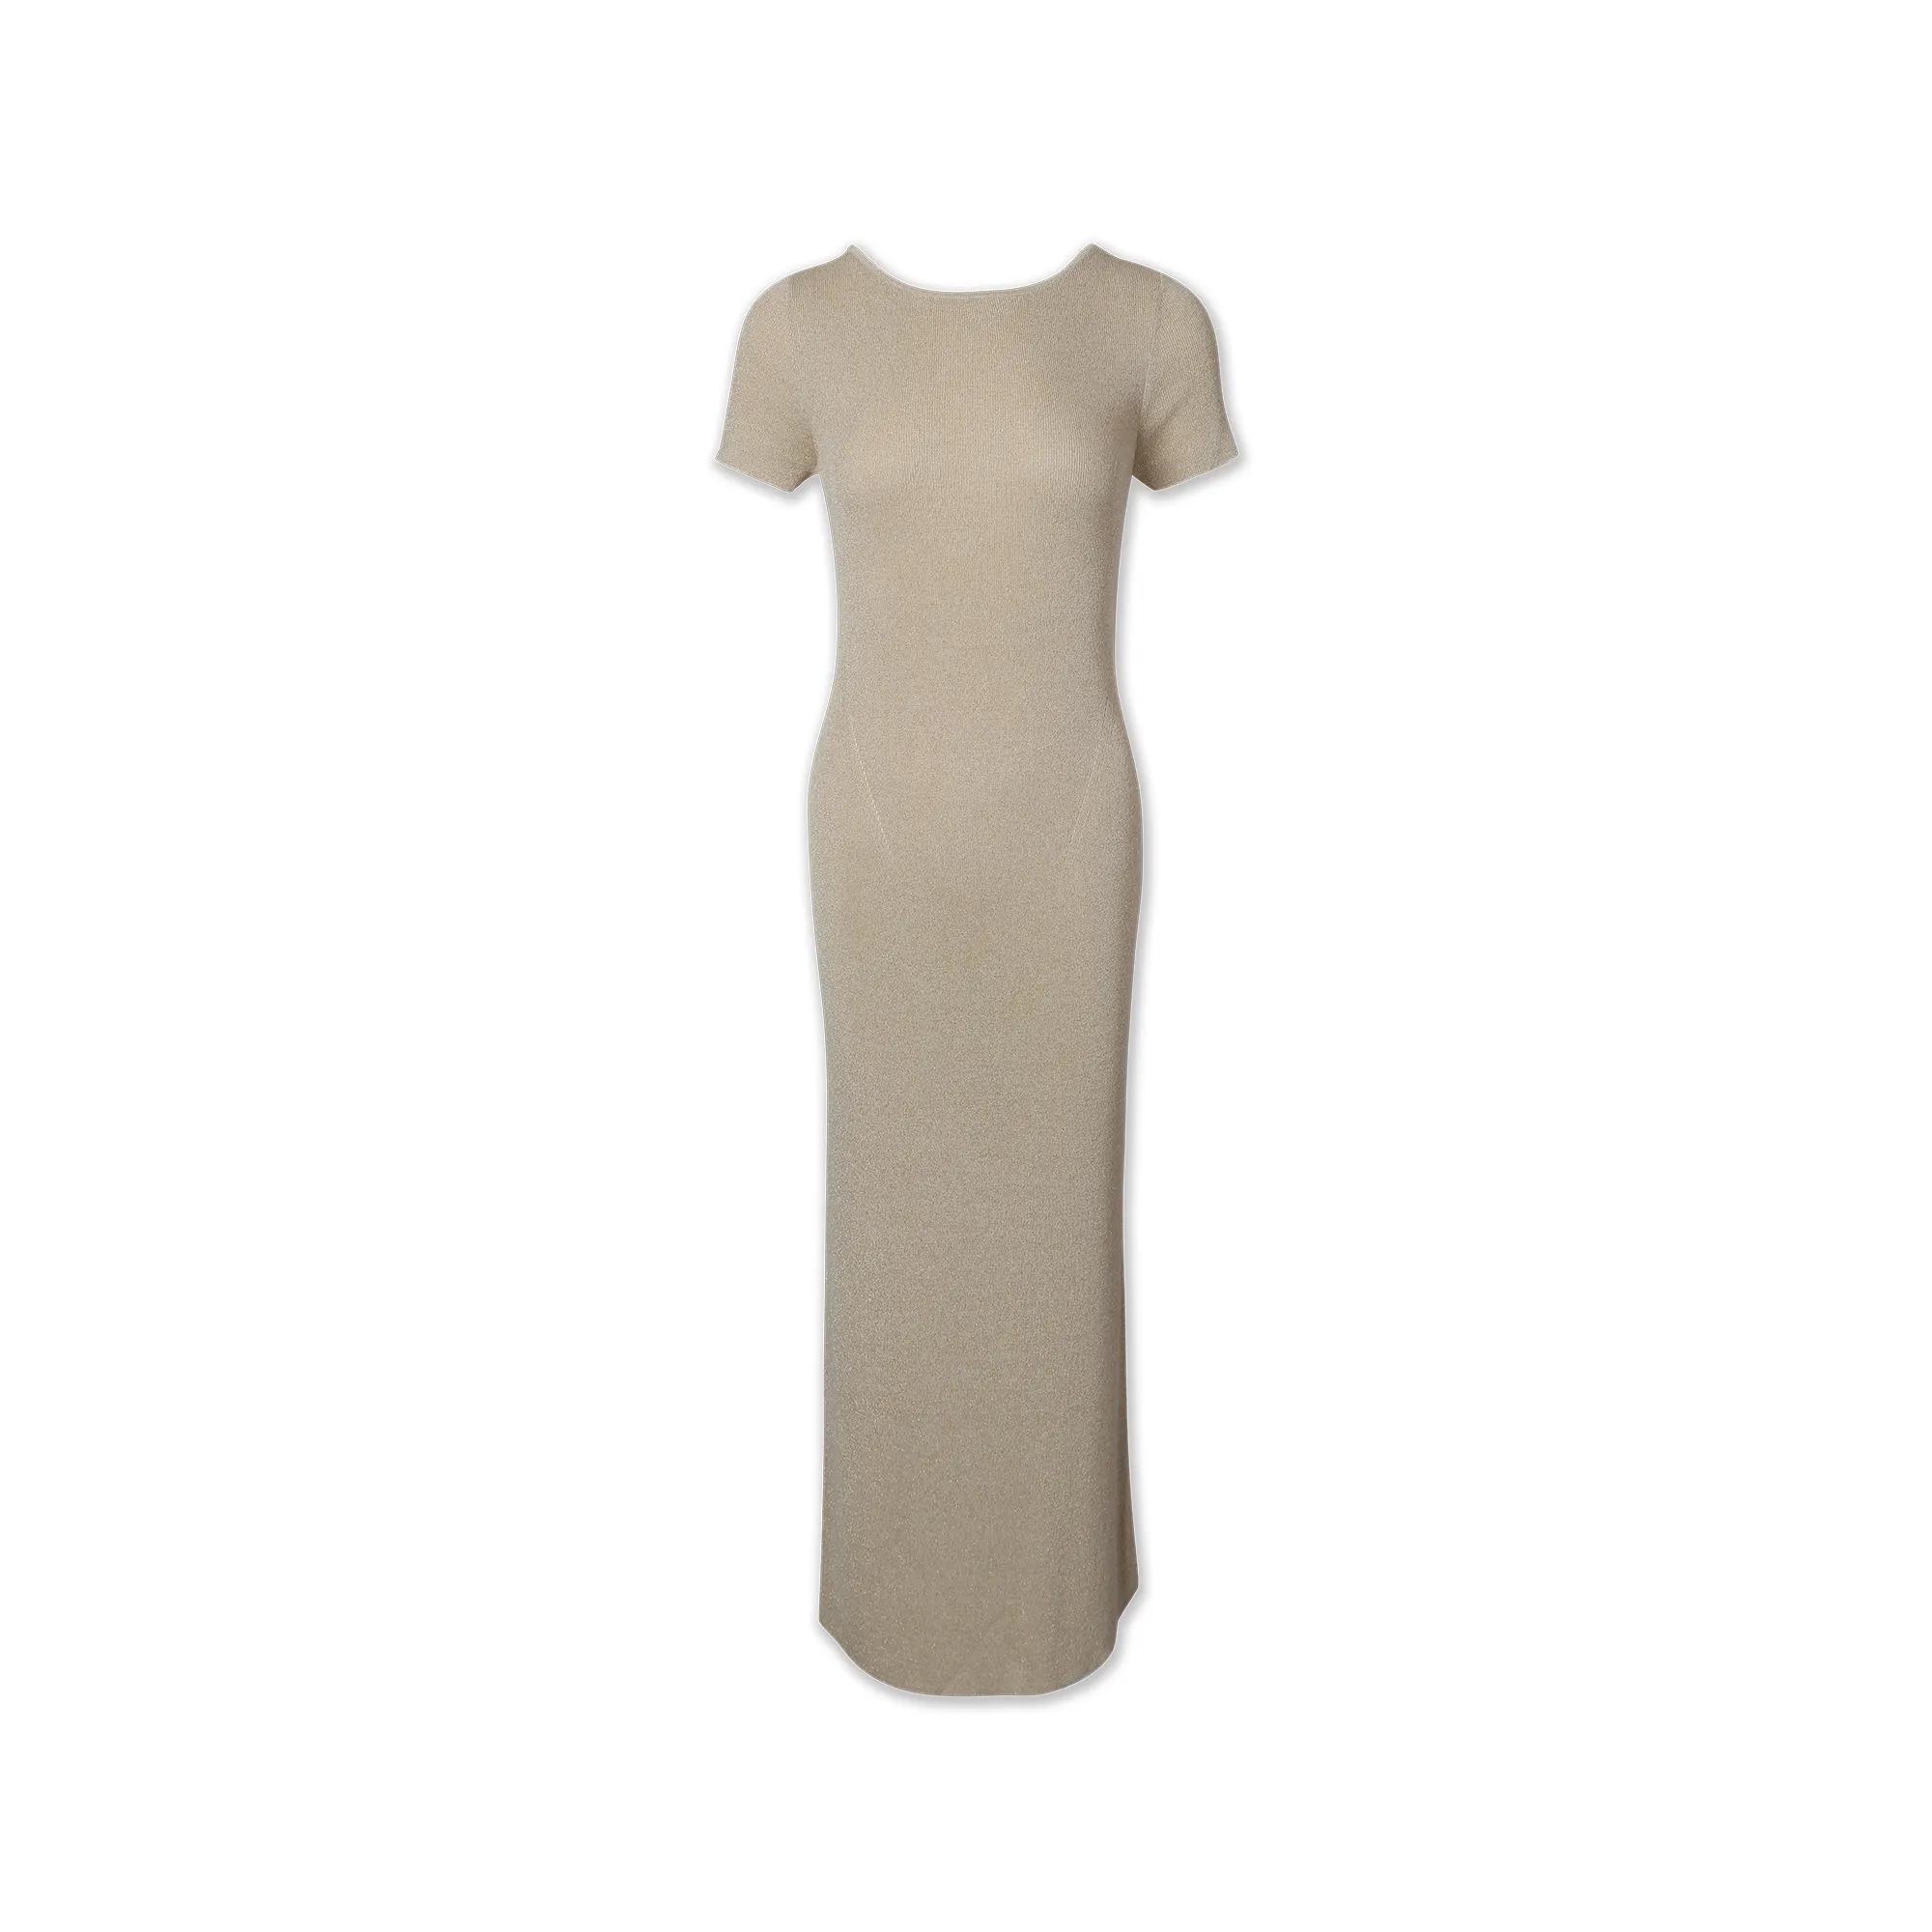 Kadınlar için moda yüksek kaliteli yuvarlak boyun kısa kollu renk blok örme elbise